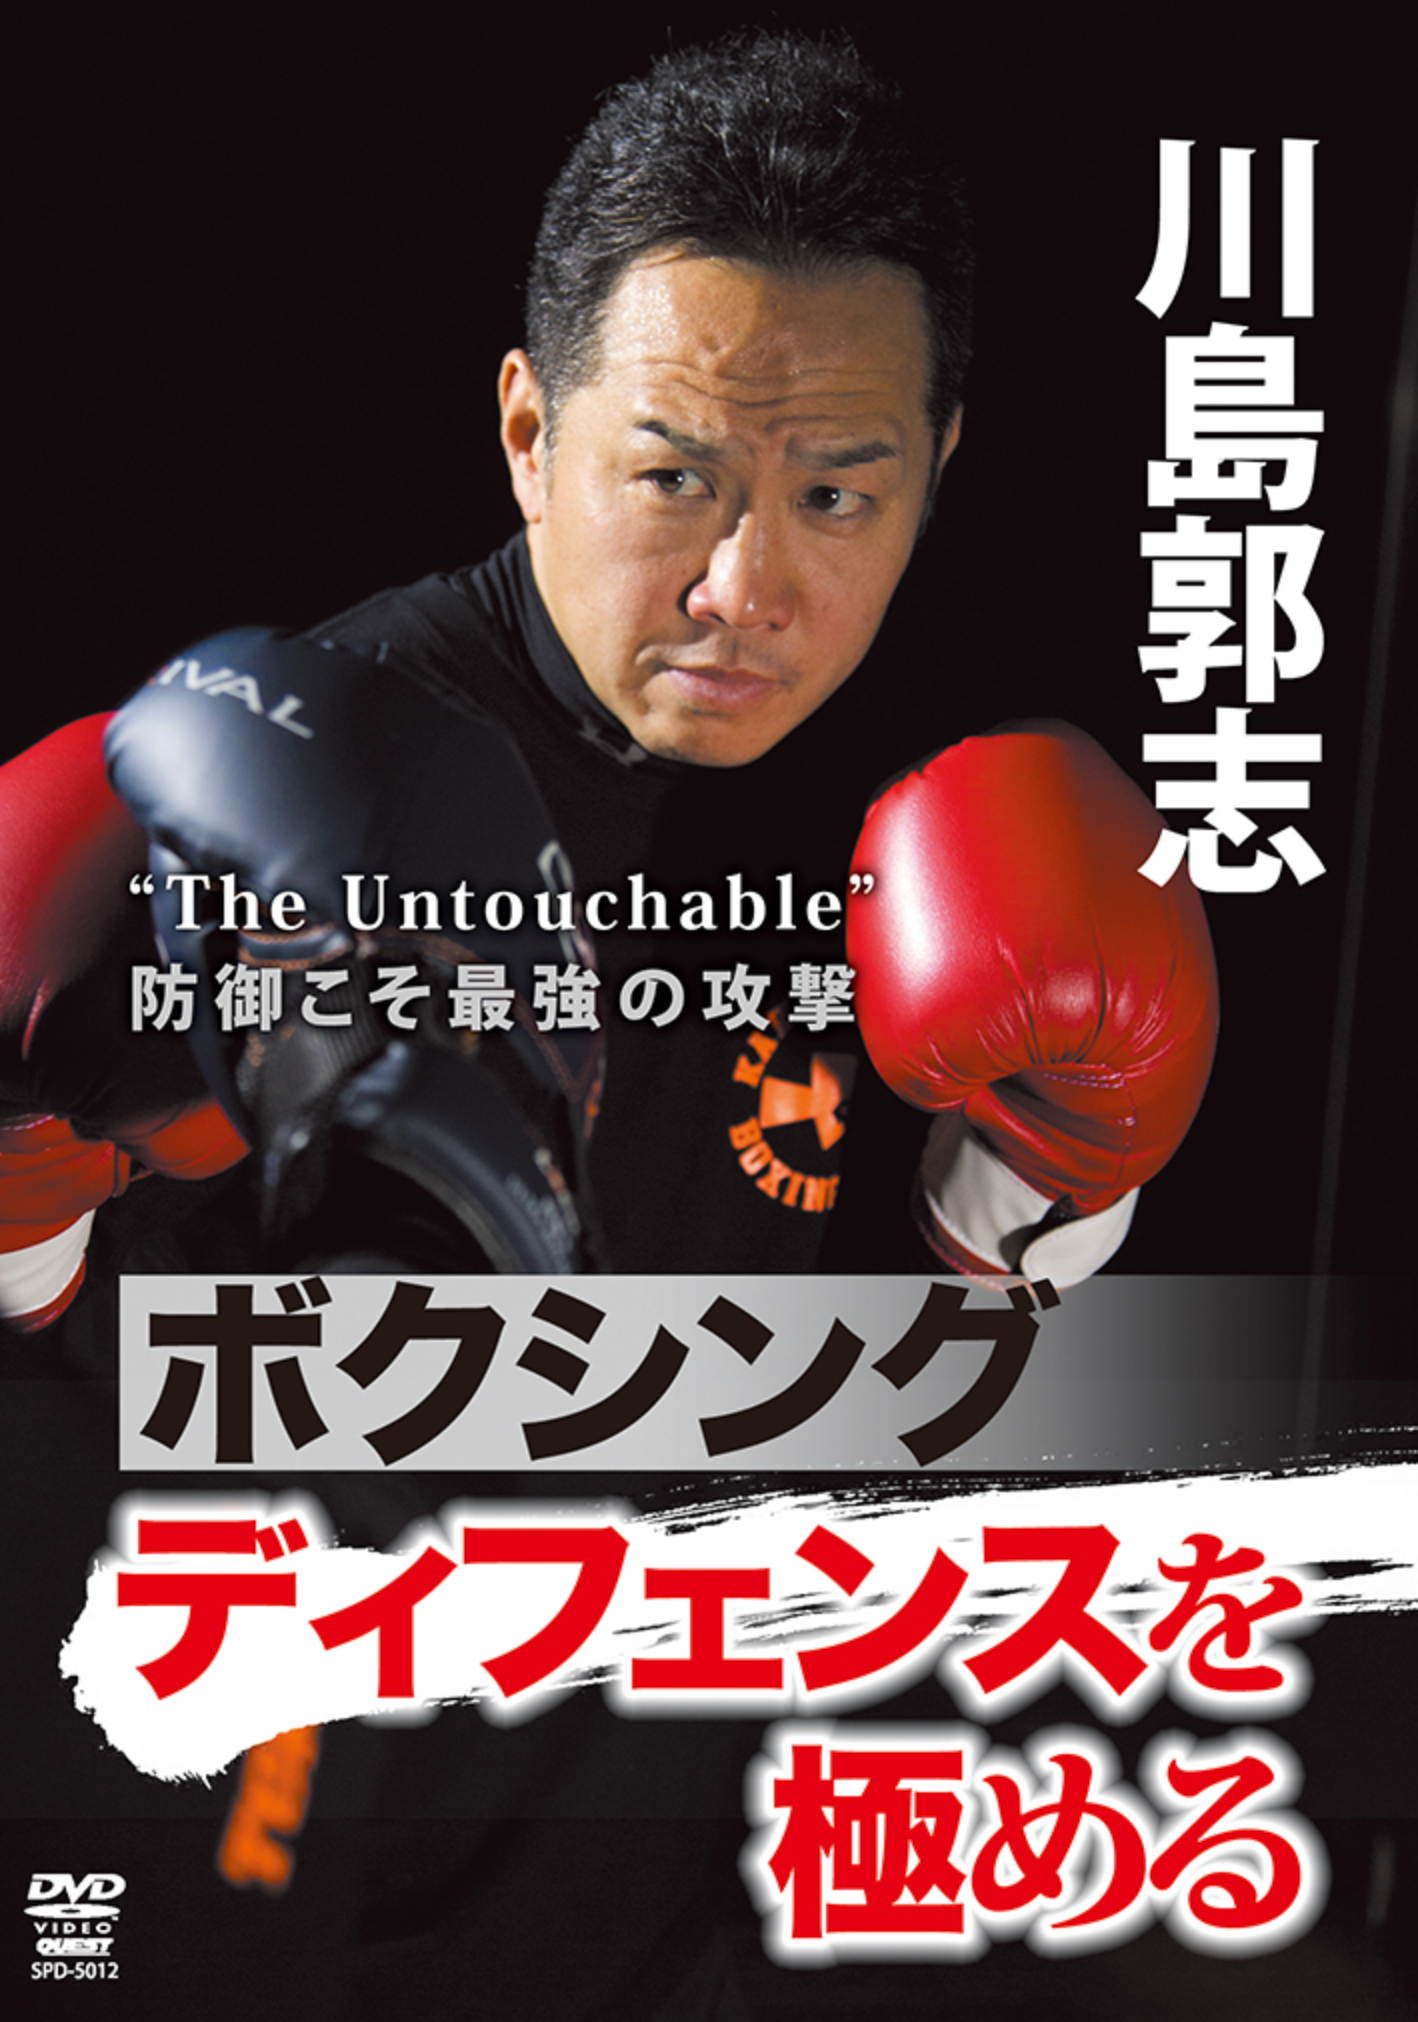 Boxing Defense DVD by Hiroshi Kawashima - Budovideos Inc